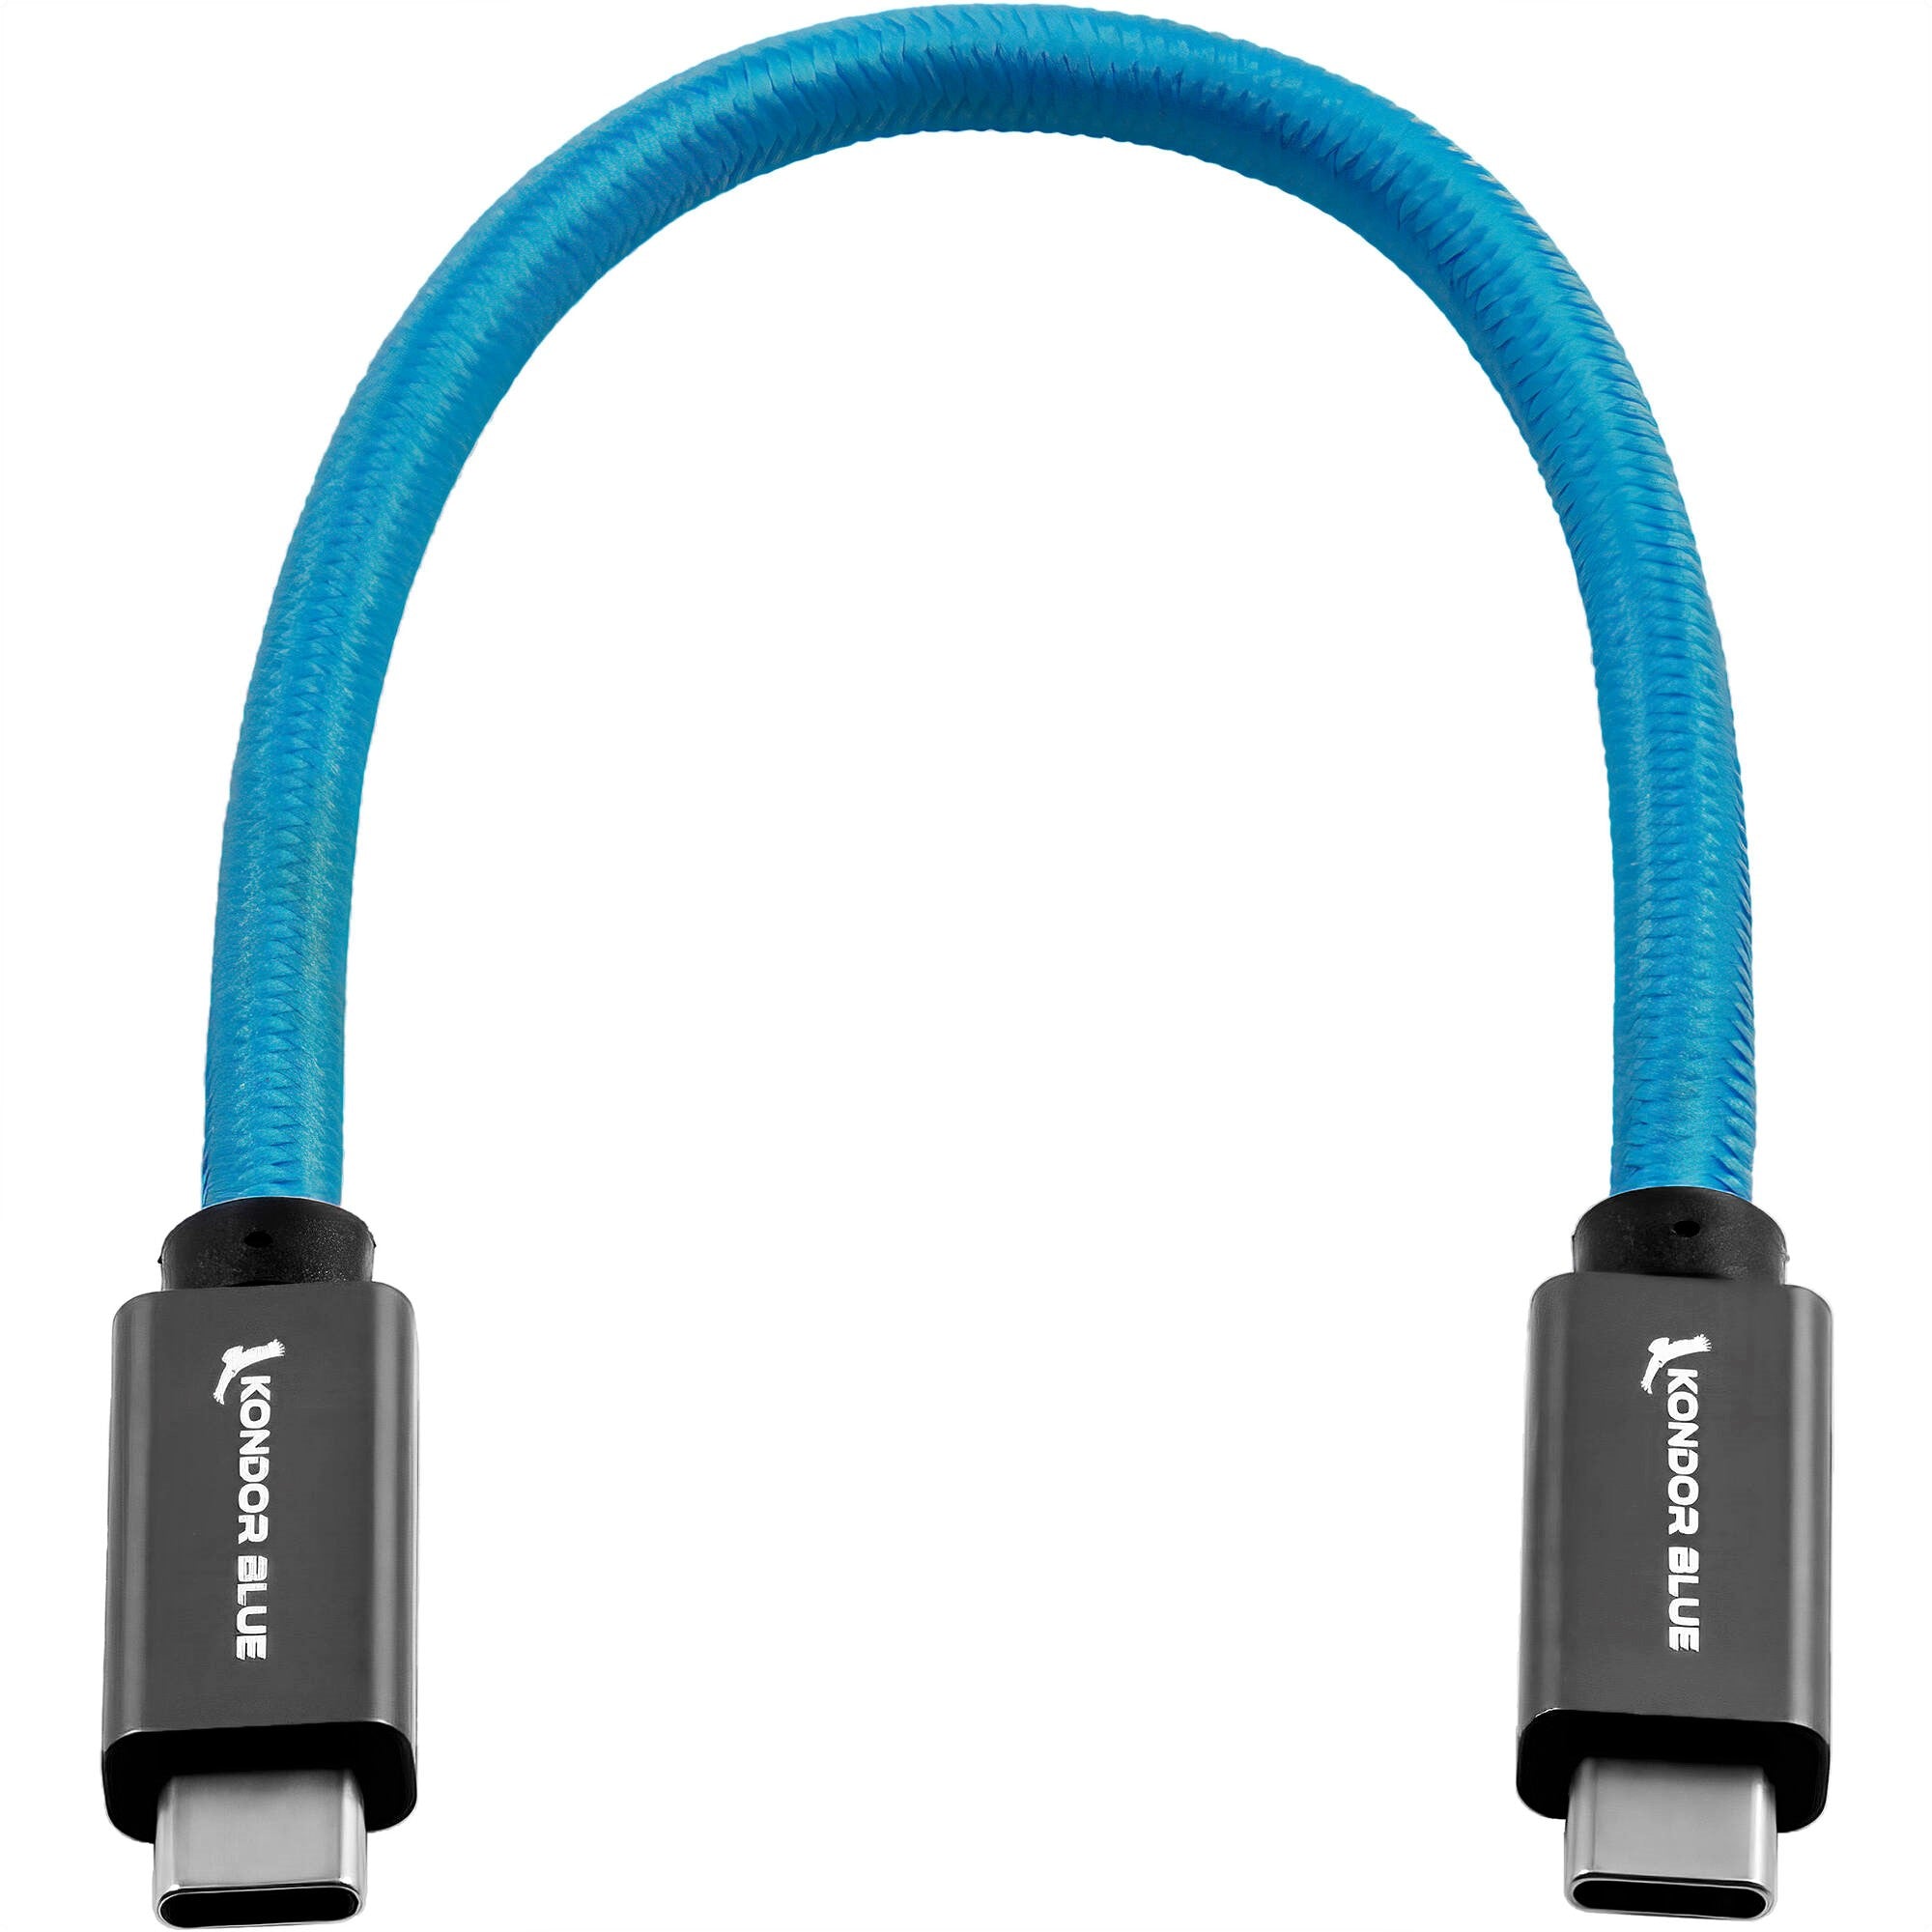 Kondor Blue USB 3.1 Gen 2 Type-C Cable (8.5")